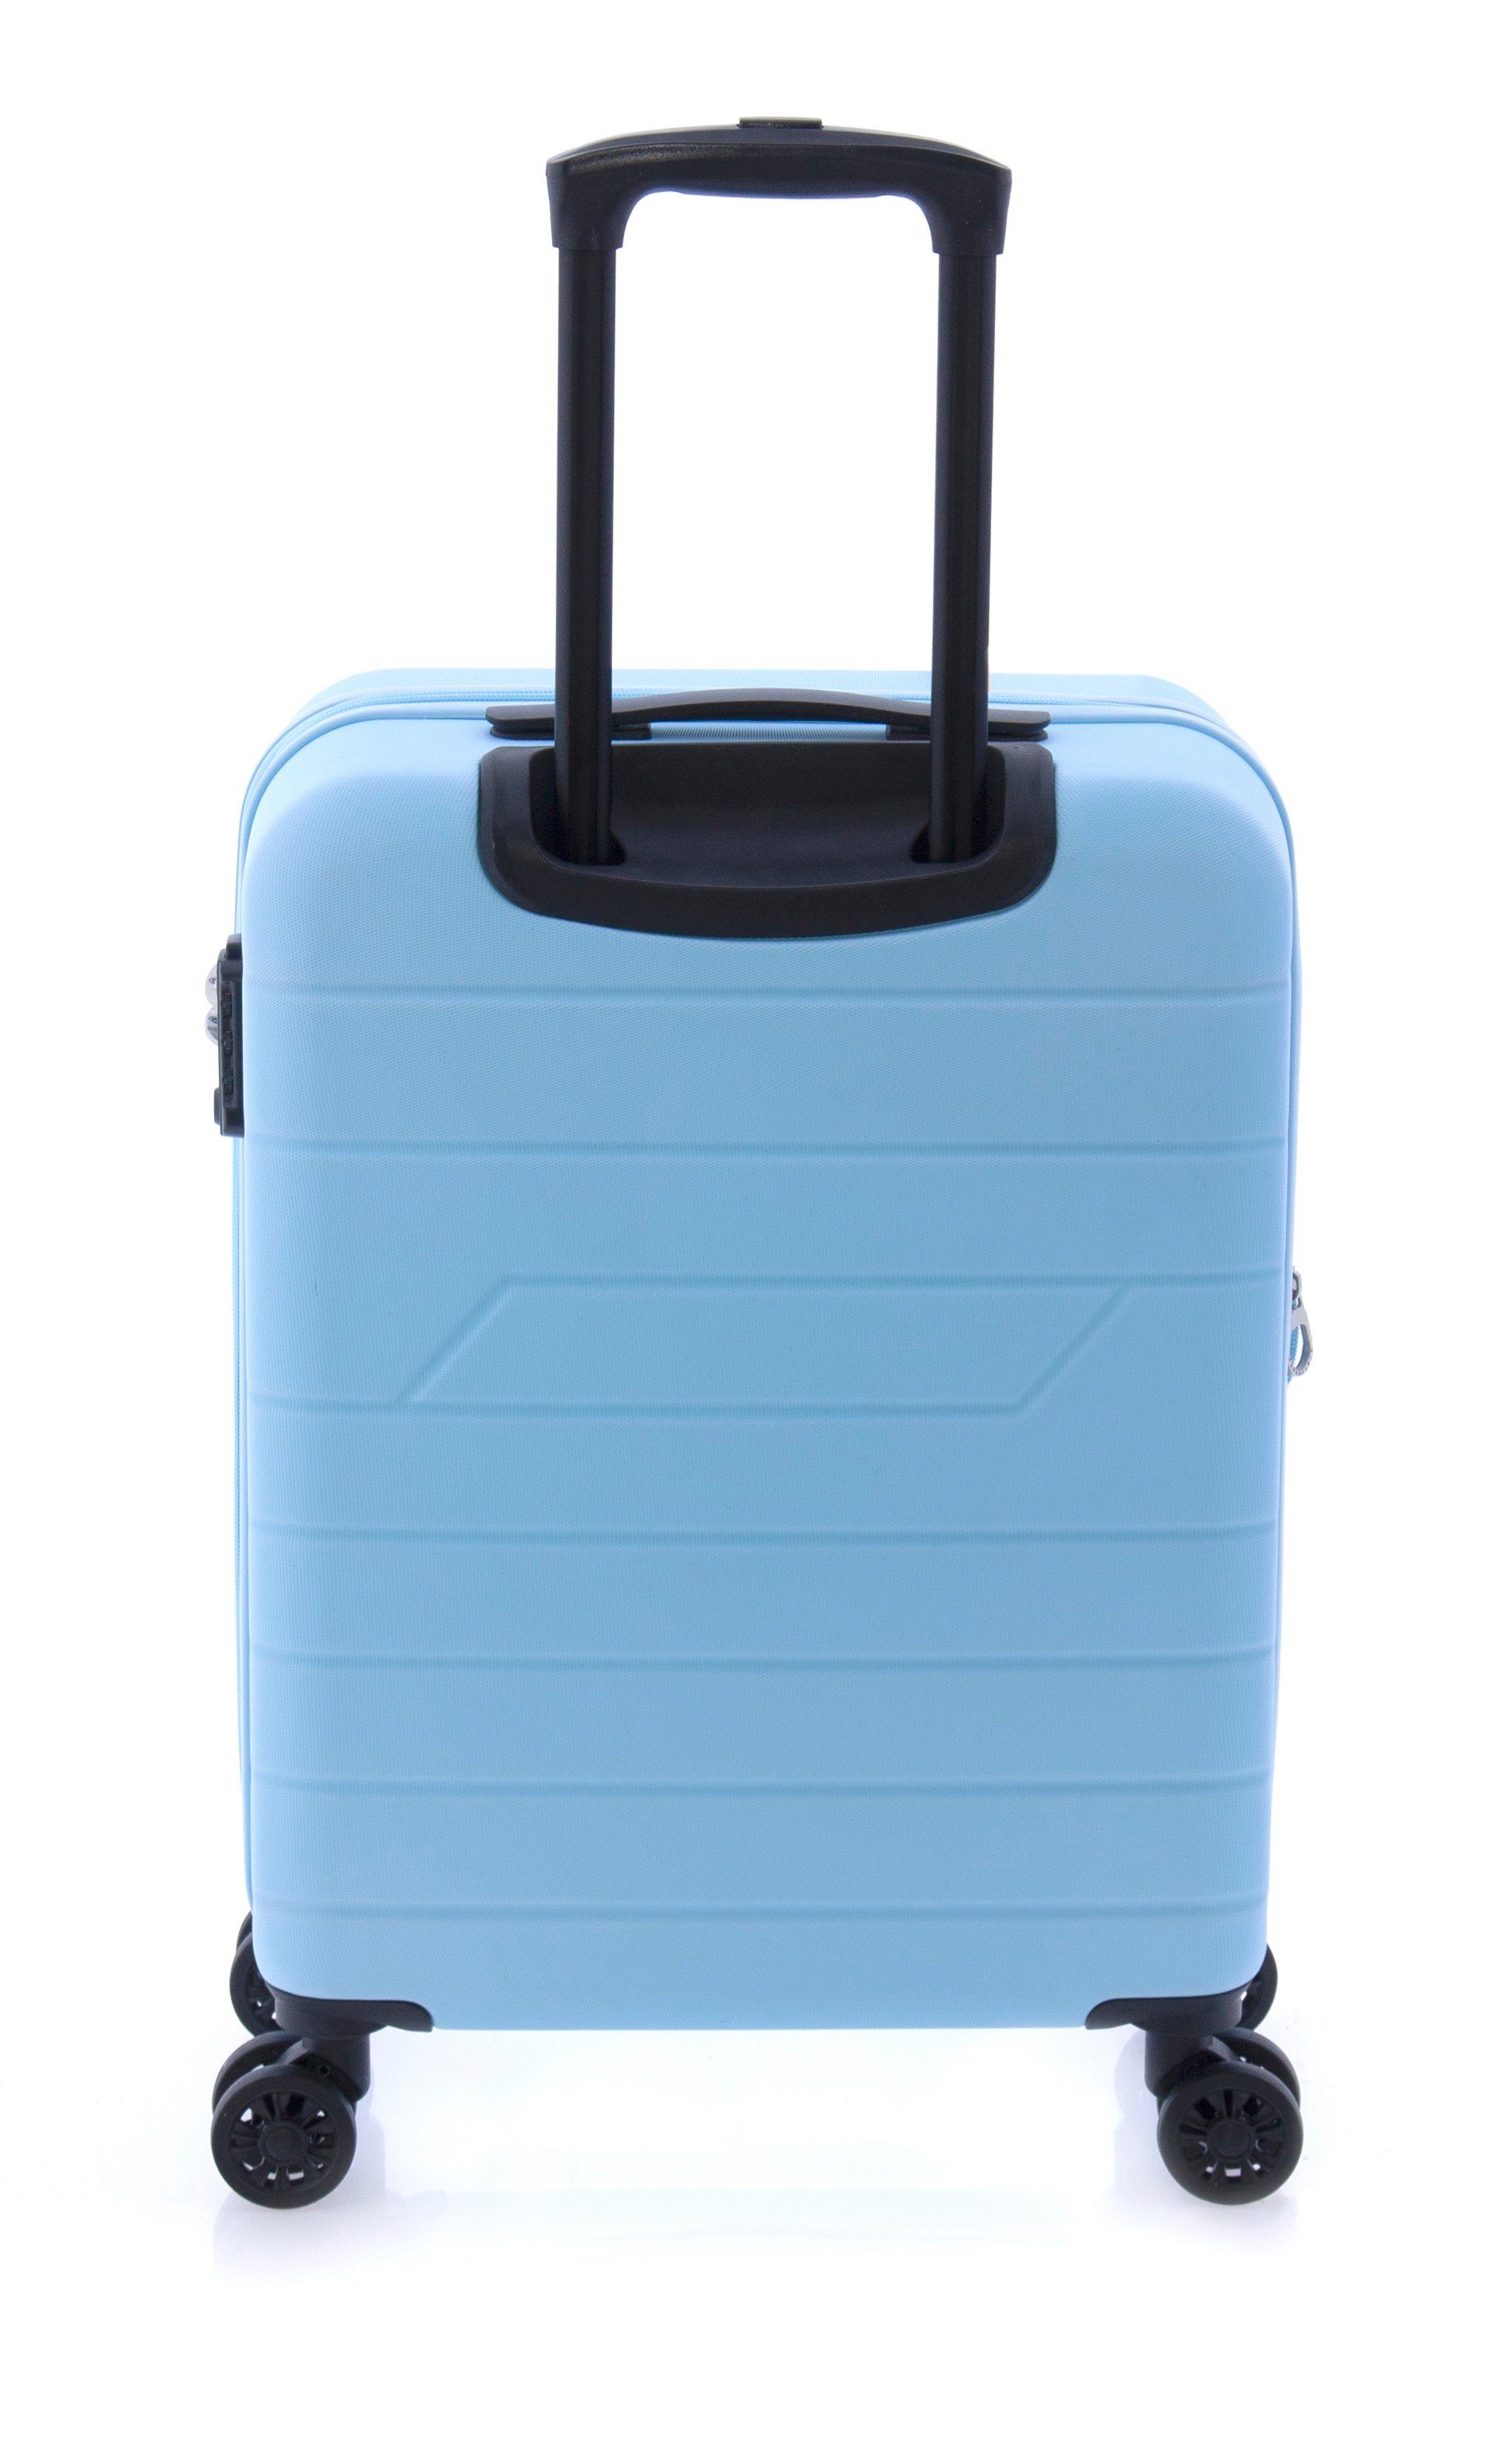 GLADIATOR Handgepäck-Trolley Koffer - Farben: blau, rot, cm, Volumen: Dehnfalte, 4 Liter, hellblau, minzgrün, 36/40 Rollen, schwarz, TSA-Schloss, gelb 55